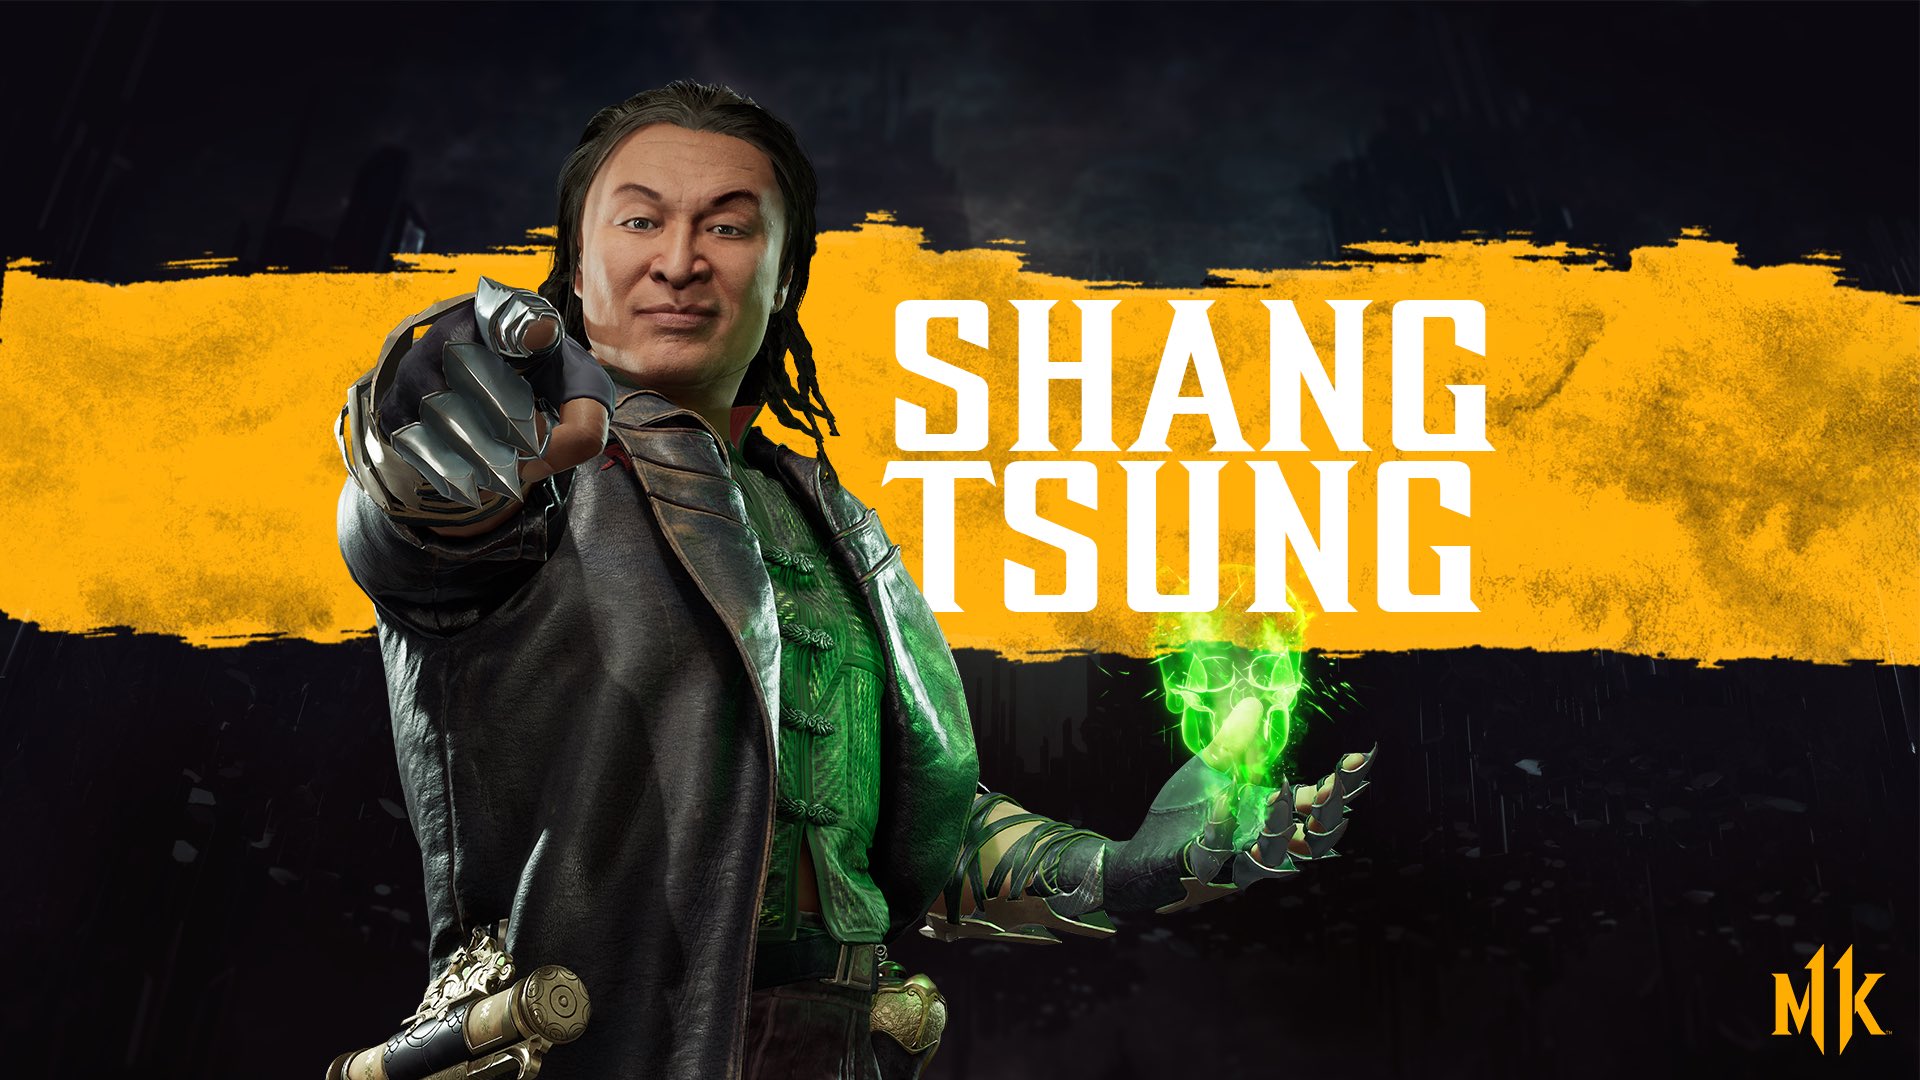 Mortal Kombat 11 Shang Tsung Coat